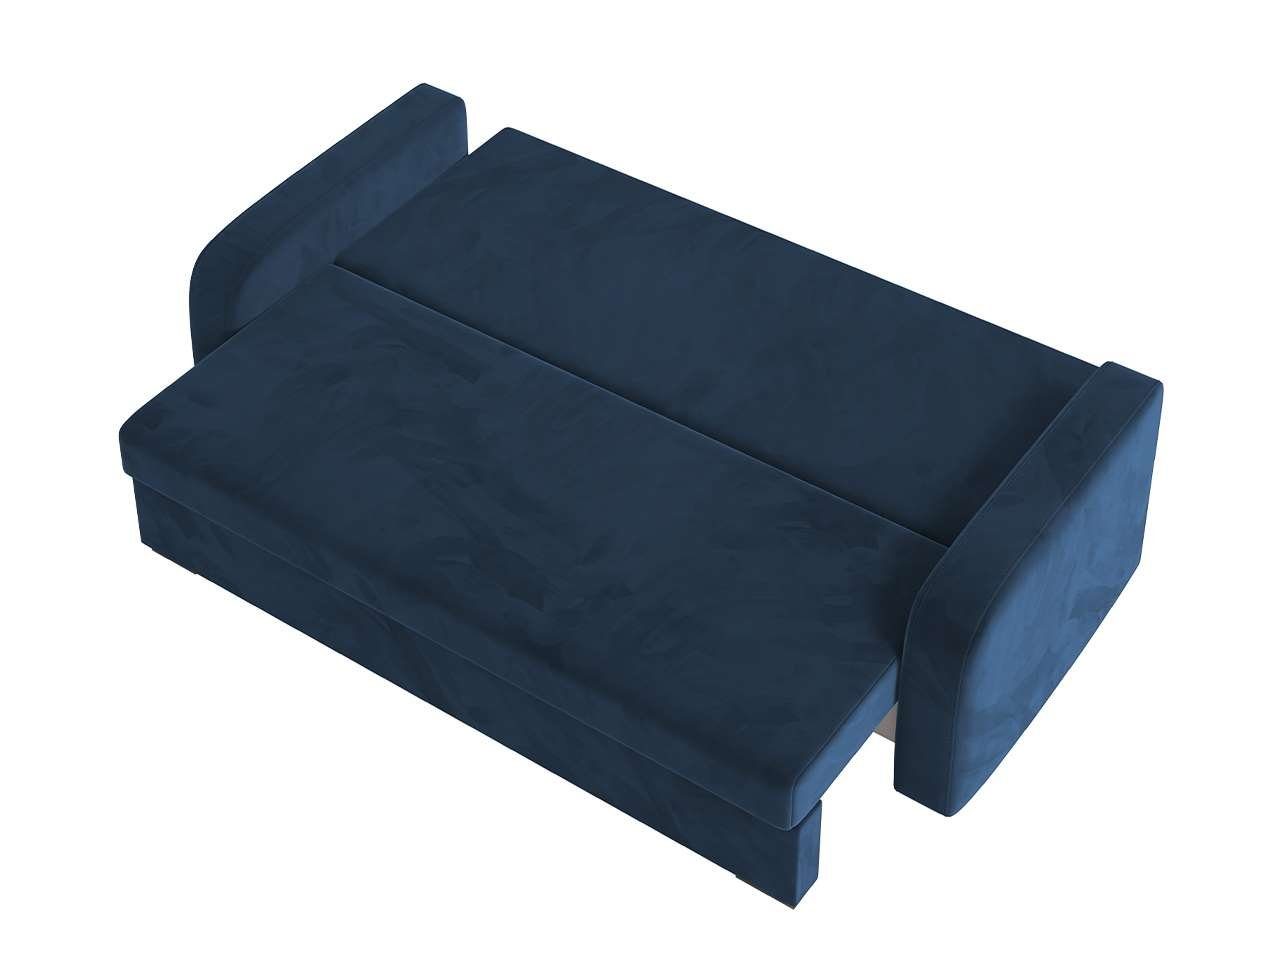 Sofa und Schlaffunktion Marineblau Bettkasten MÖBEL LENA, MKS mit